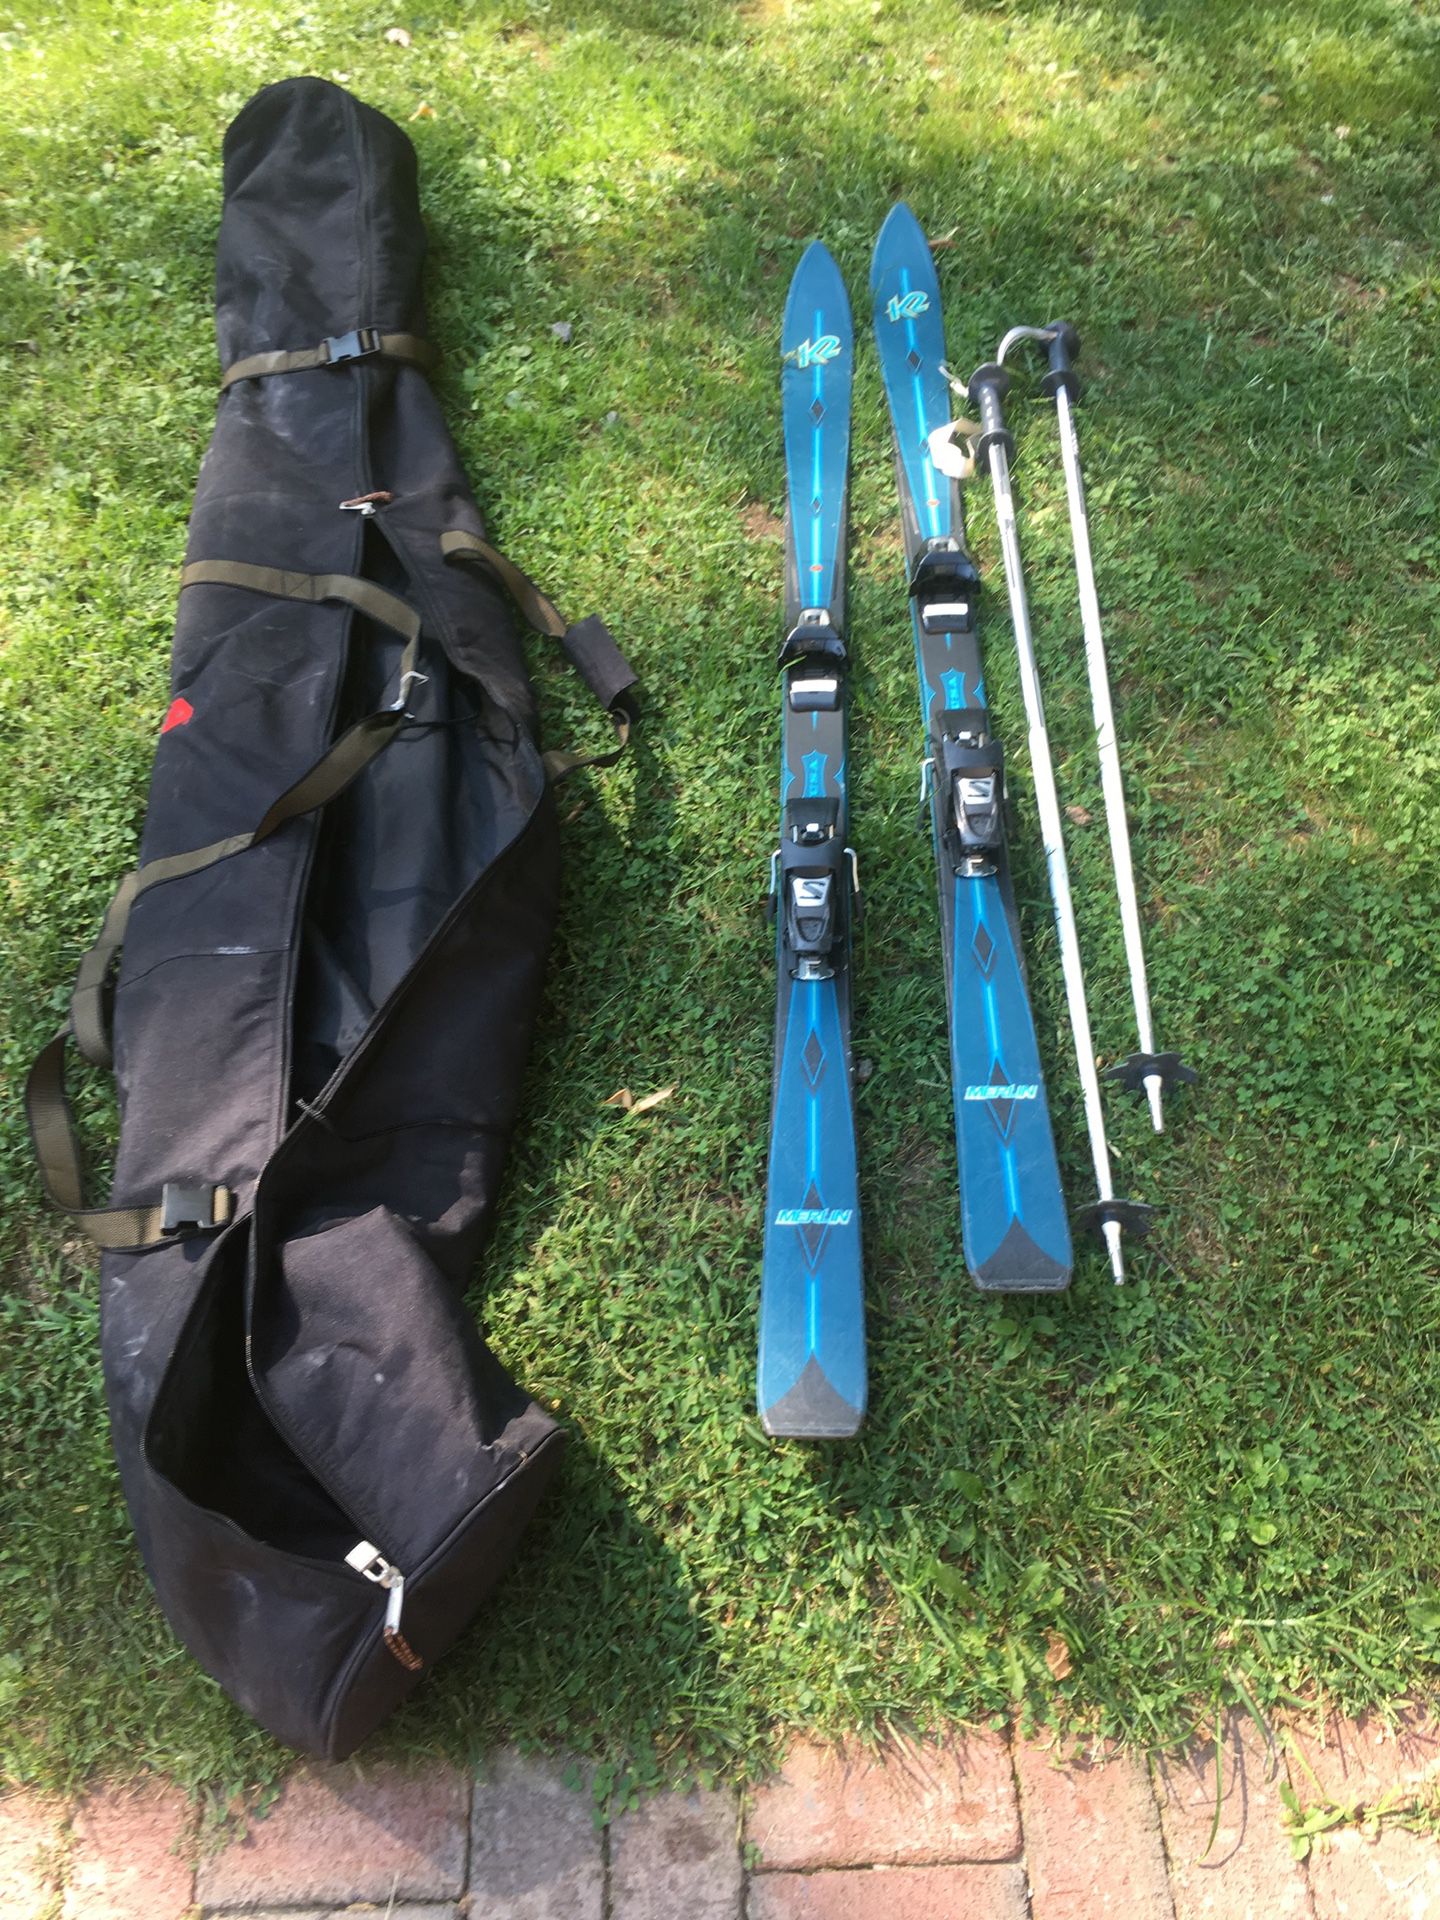 K2 skis, poles and bag